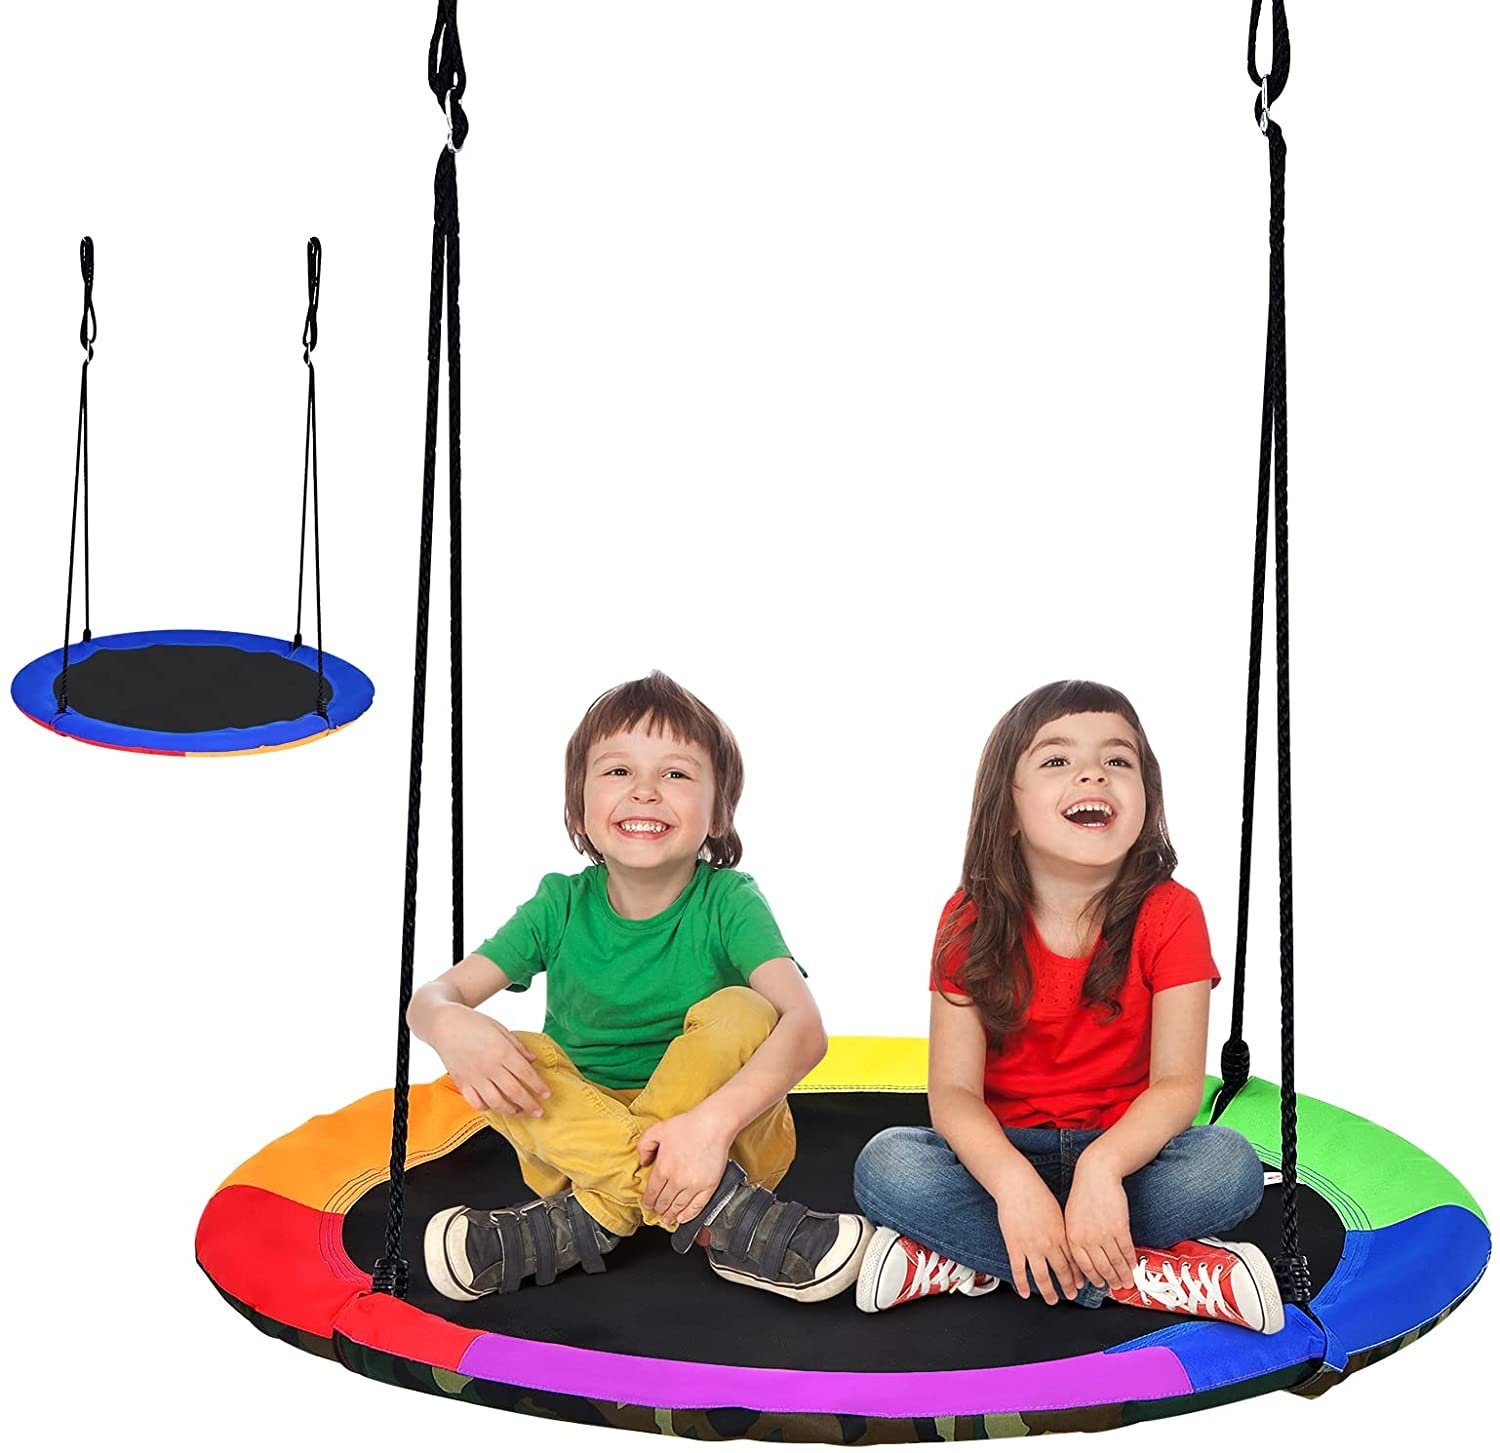 Kinder Schaukel Disc Spielzeug Sitz Kinder Schaukel rund Seil Schaukeln Outdoor 